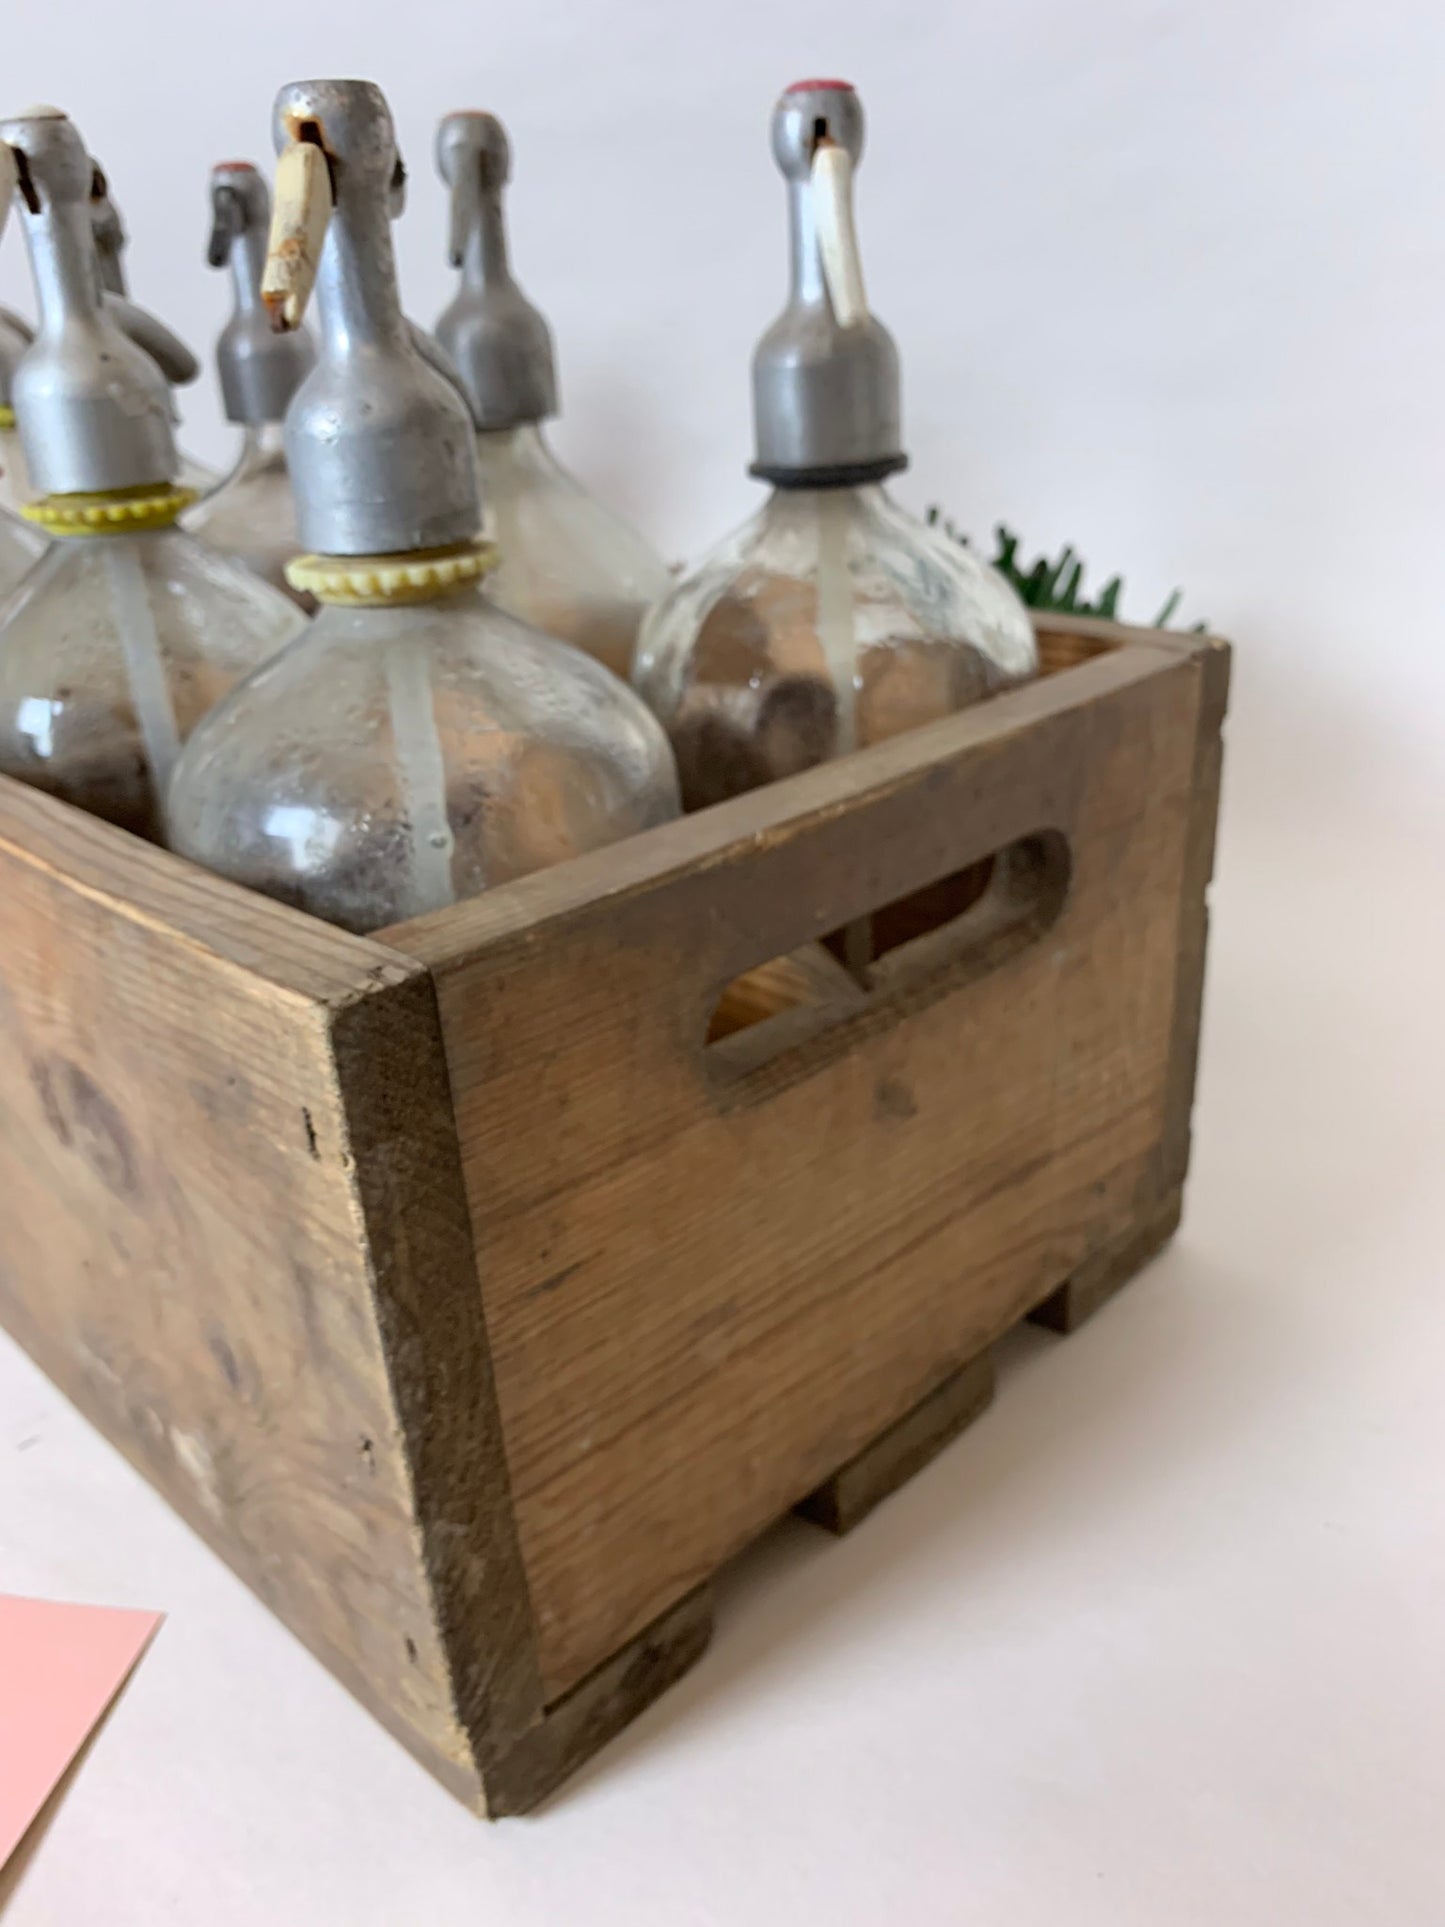 Holzkiste mit Platz für 10 Siphonflaschen - der Preis gilt nur für die Kiste, ohne Flaschen